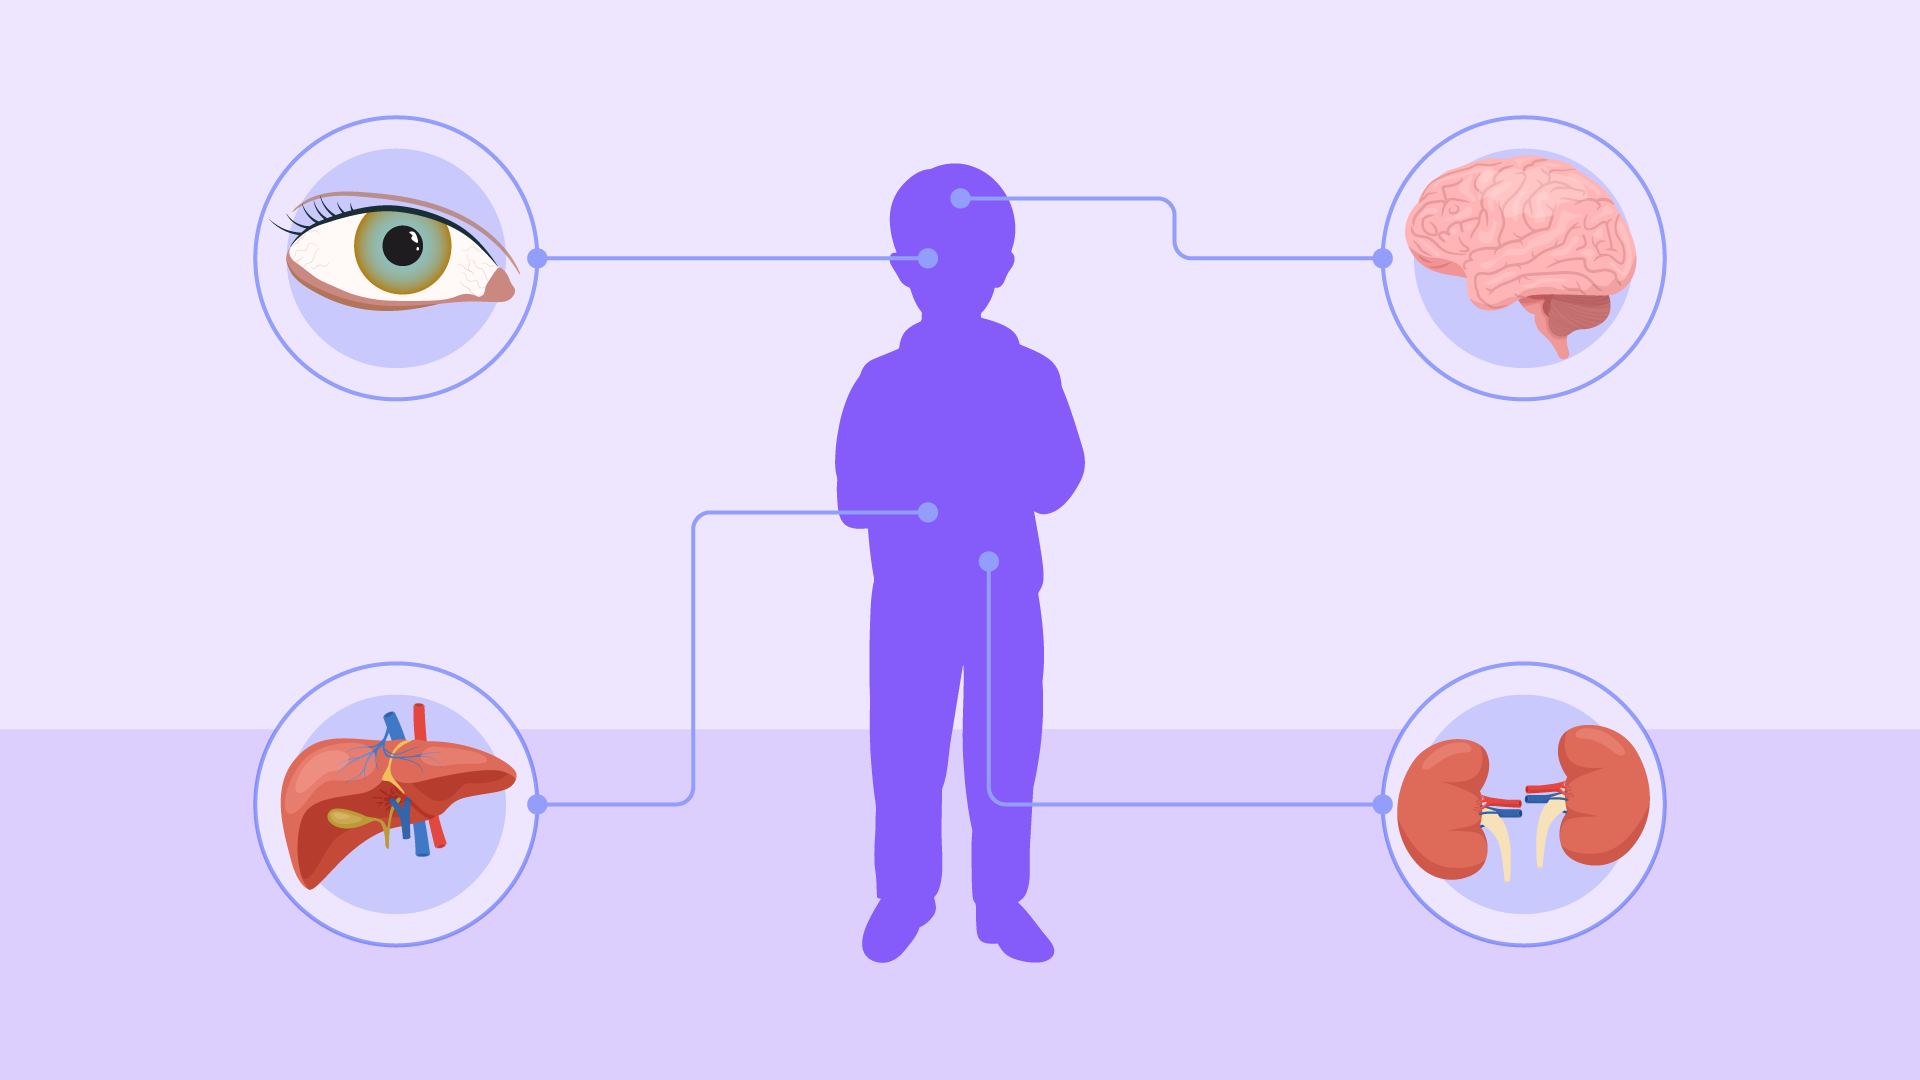 Uma criança em destaque roxo, com elementos ao redor em círculos: olho, fígado, cérebro e rins.